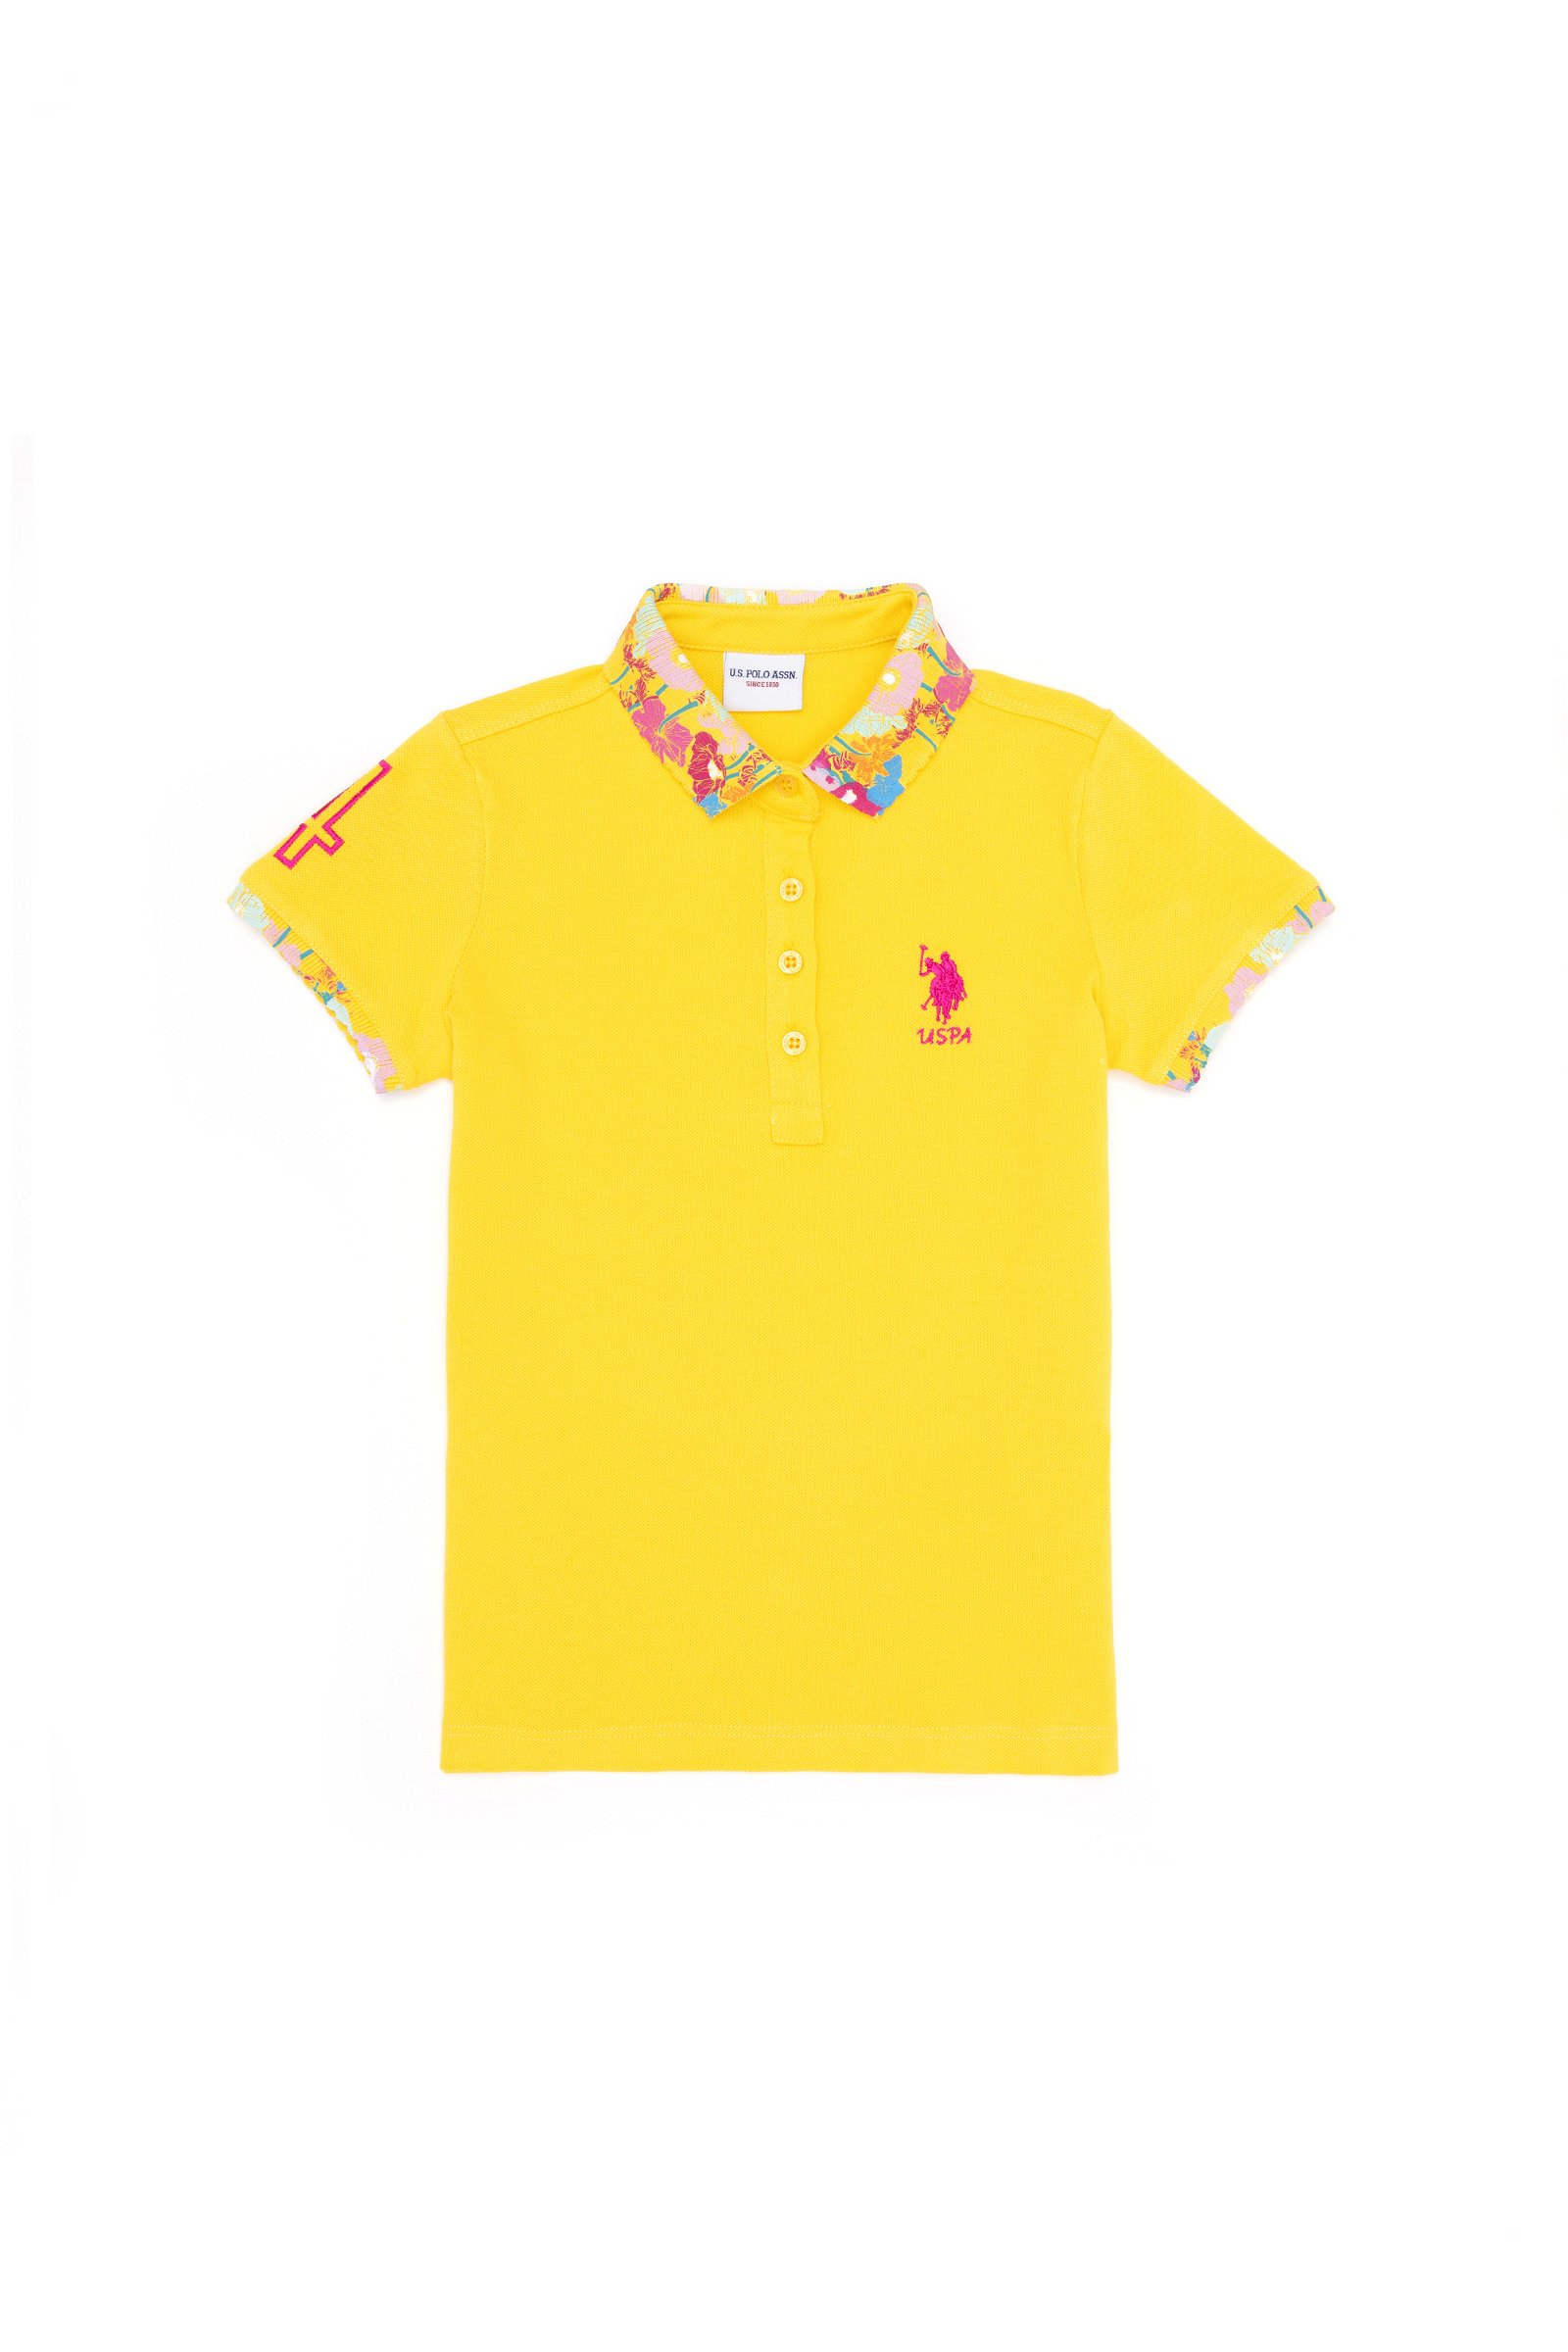 تی شرت یقه پولو زرد تیره  استاندارد فیت آستین کوتاه دخترانه یو اس پولو | US POLO ASSN